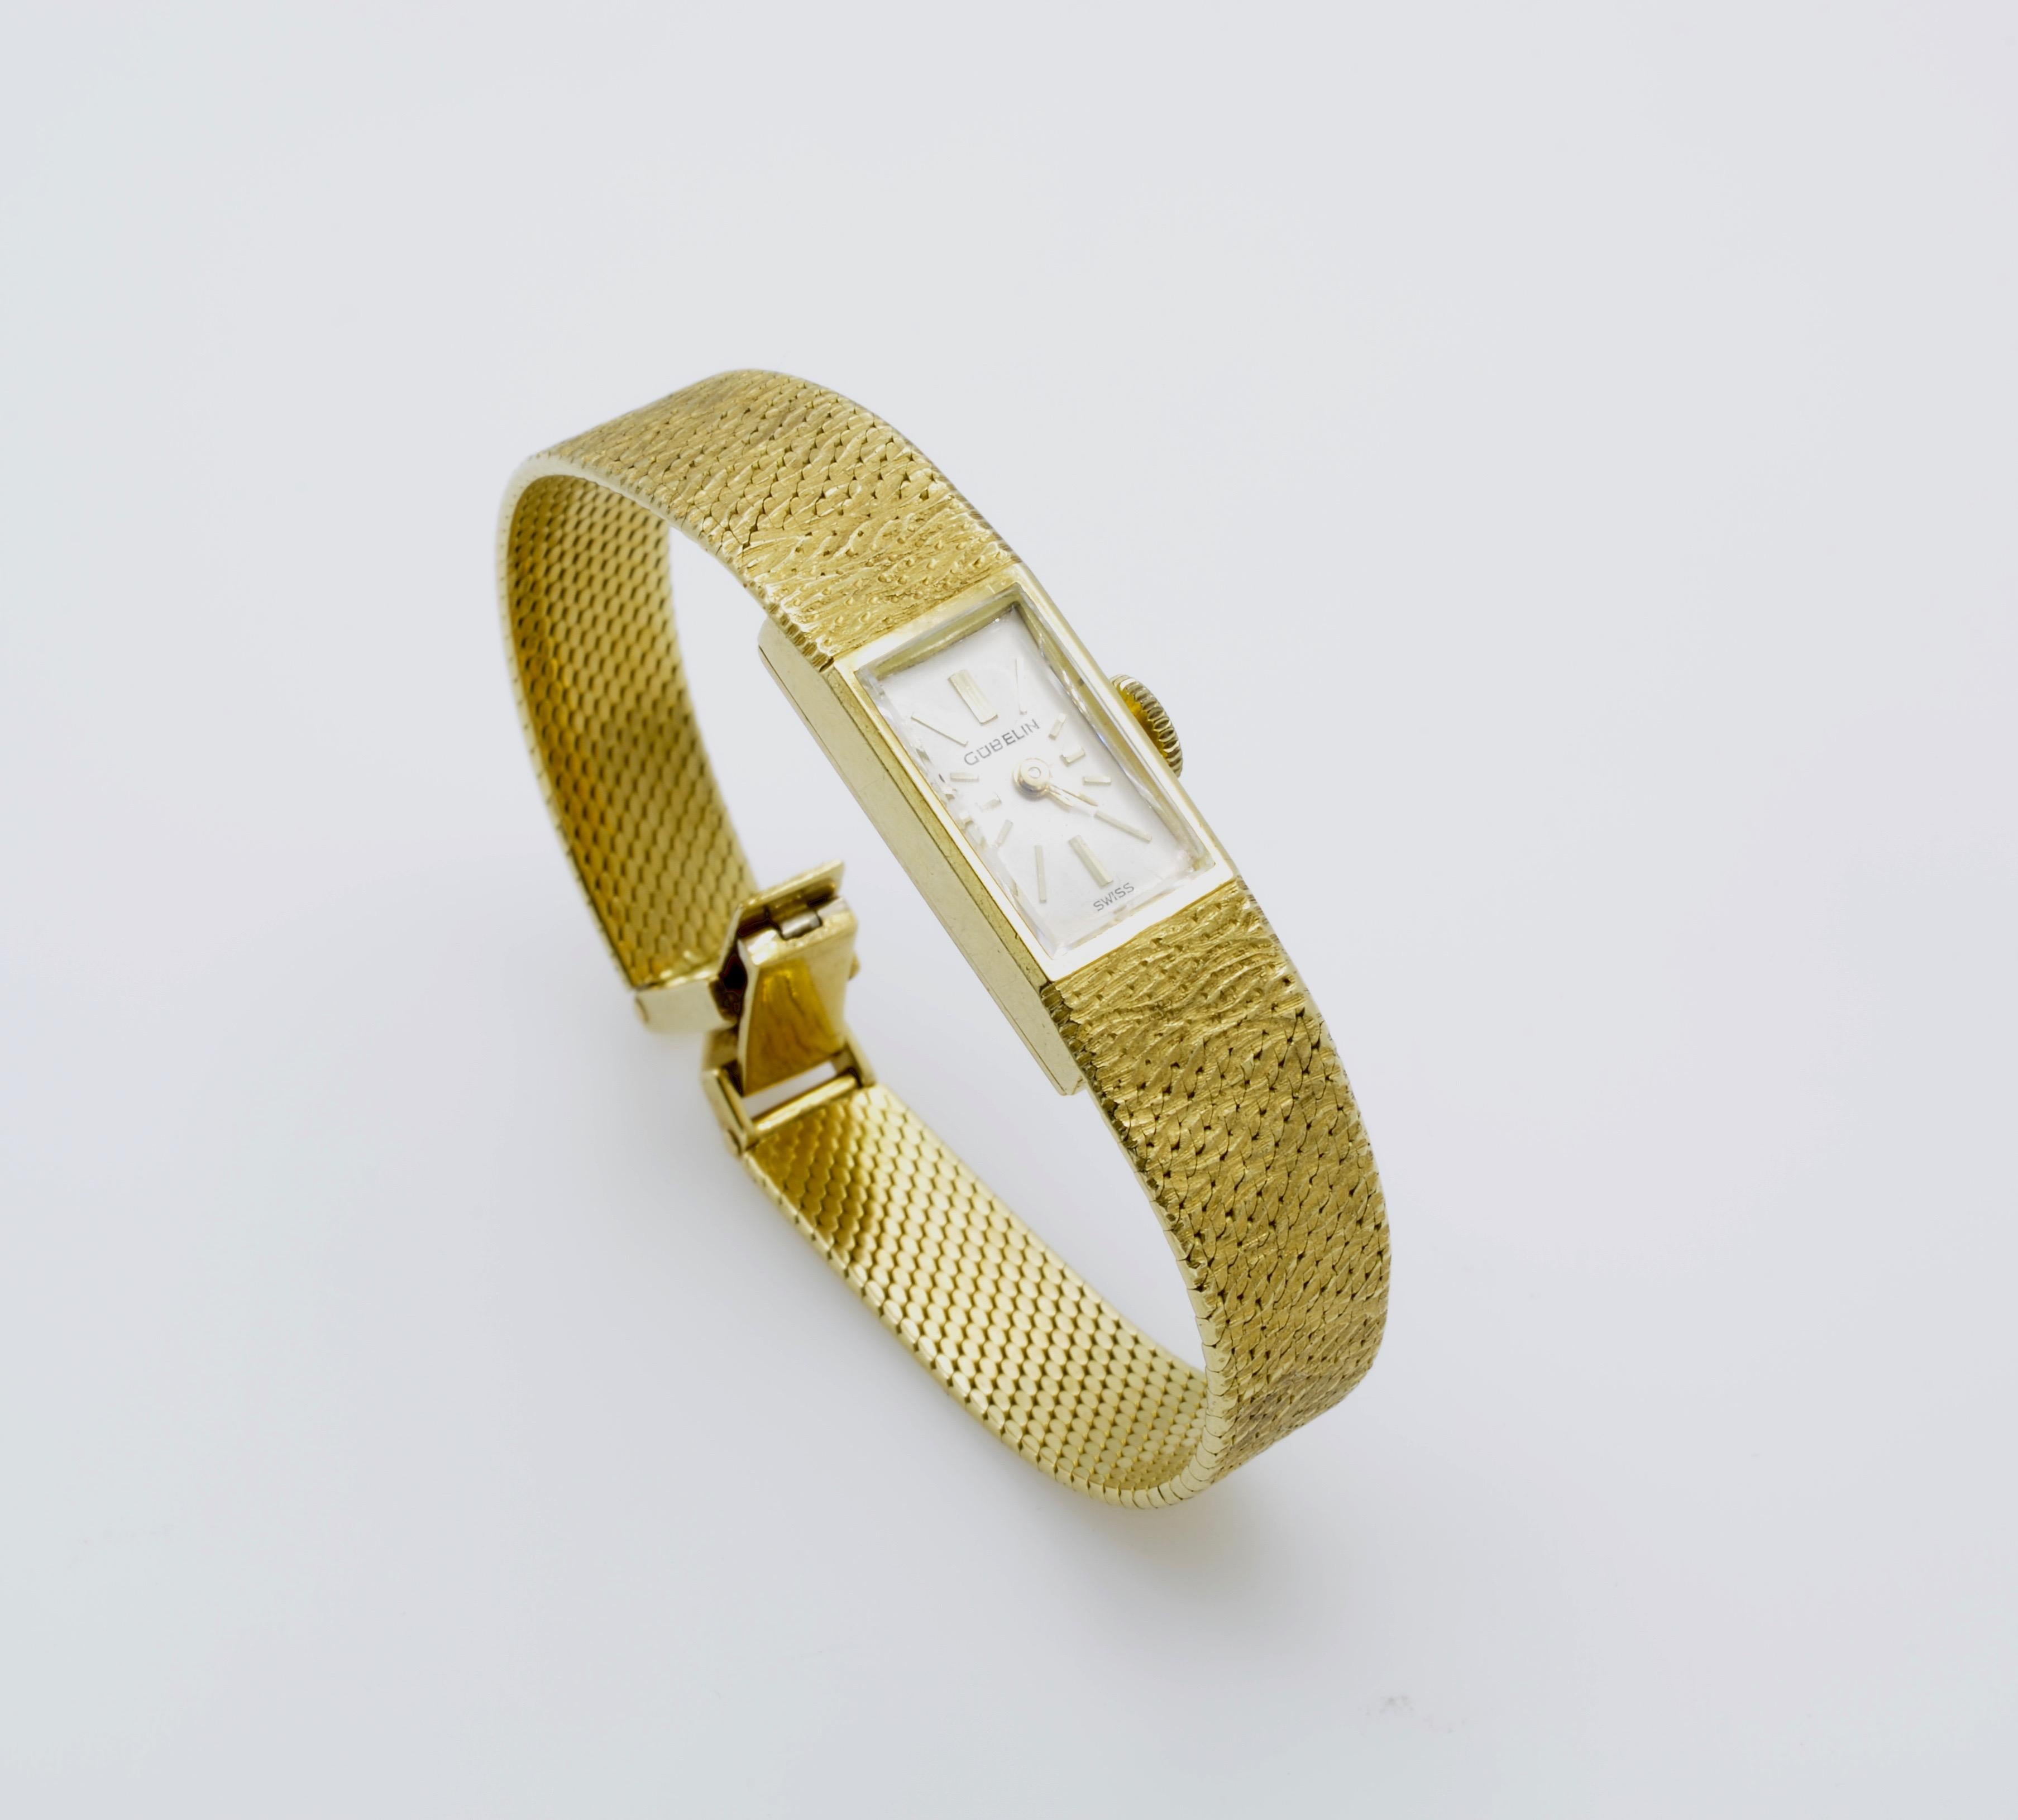 Montre-bracelet en or pour femmes, moderne et classique. Elle présente un élégant cadran rectangulaire sur un bracelet en or texturé, de fabrication suisse et de conception intemporelle. Le mouvement est magnifique et fonctionne bien, il a juste